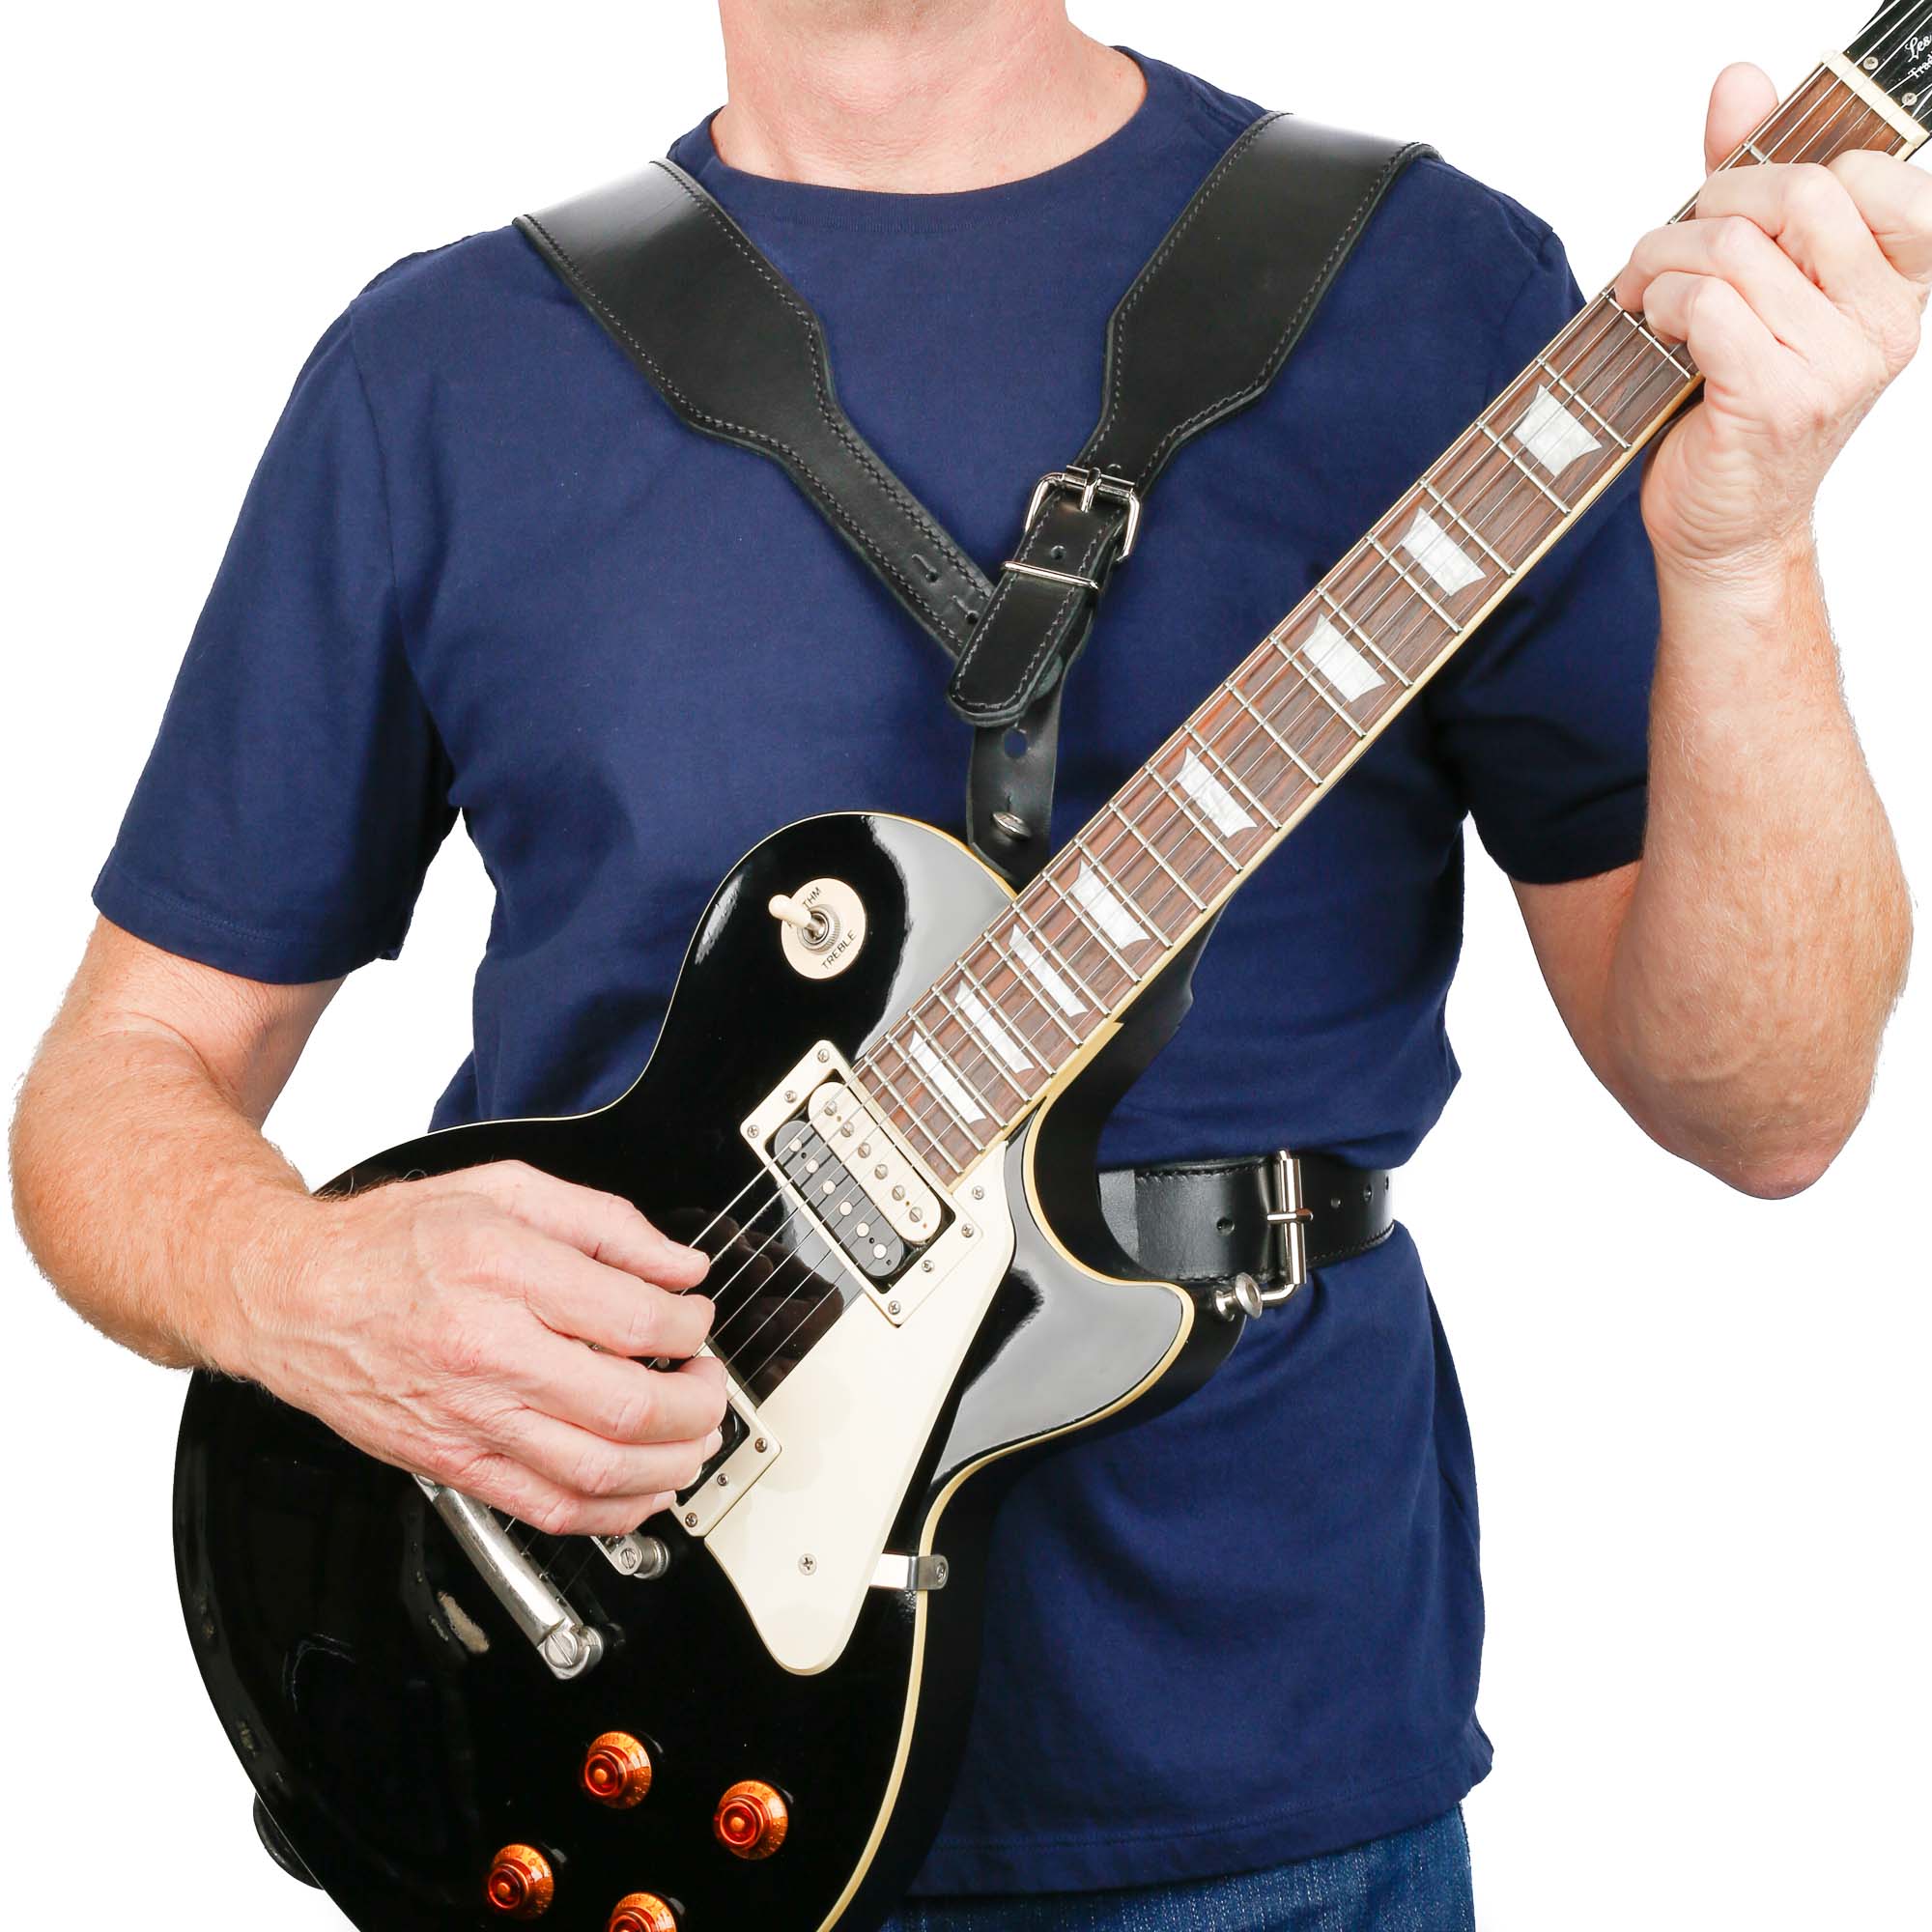 Harness Strap  Double Shoulder Guitar Strap - Slinger Straps